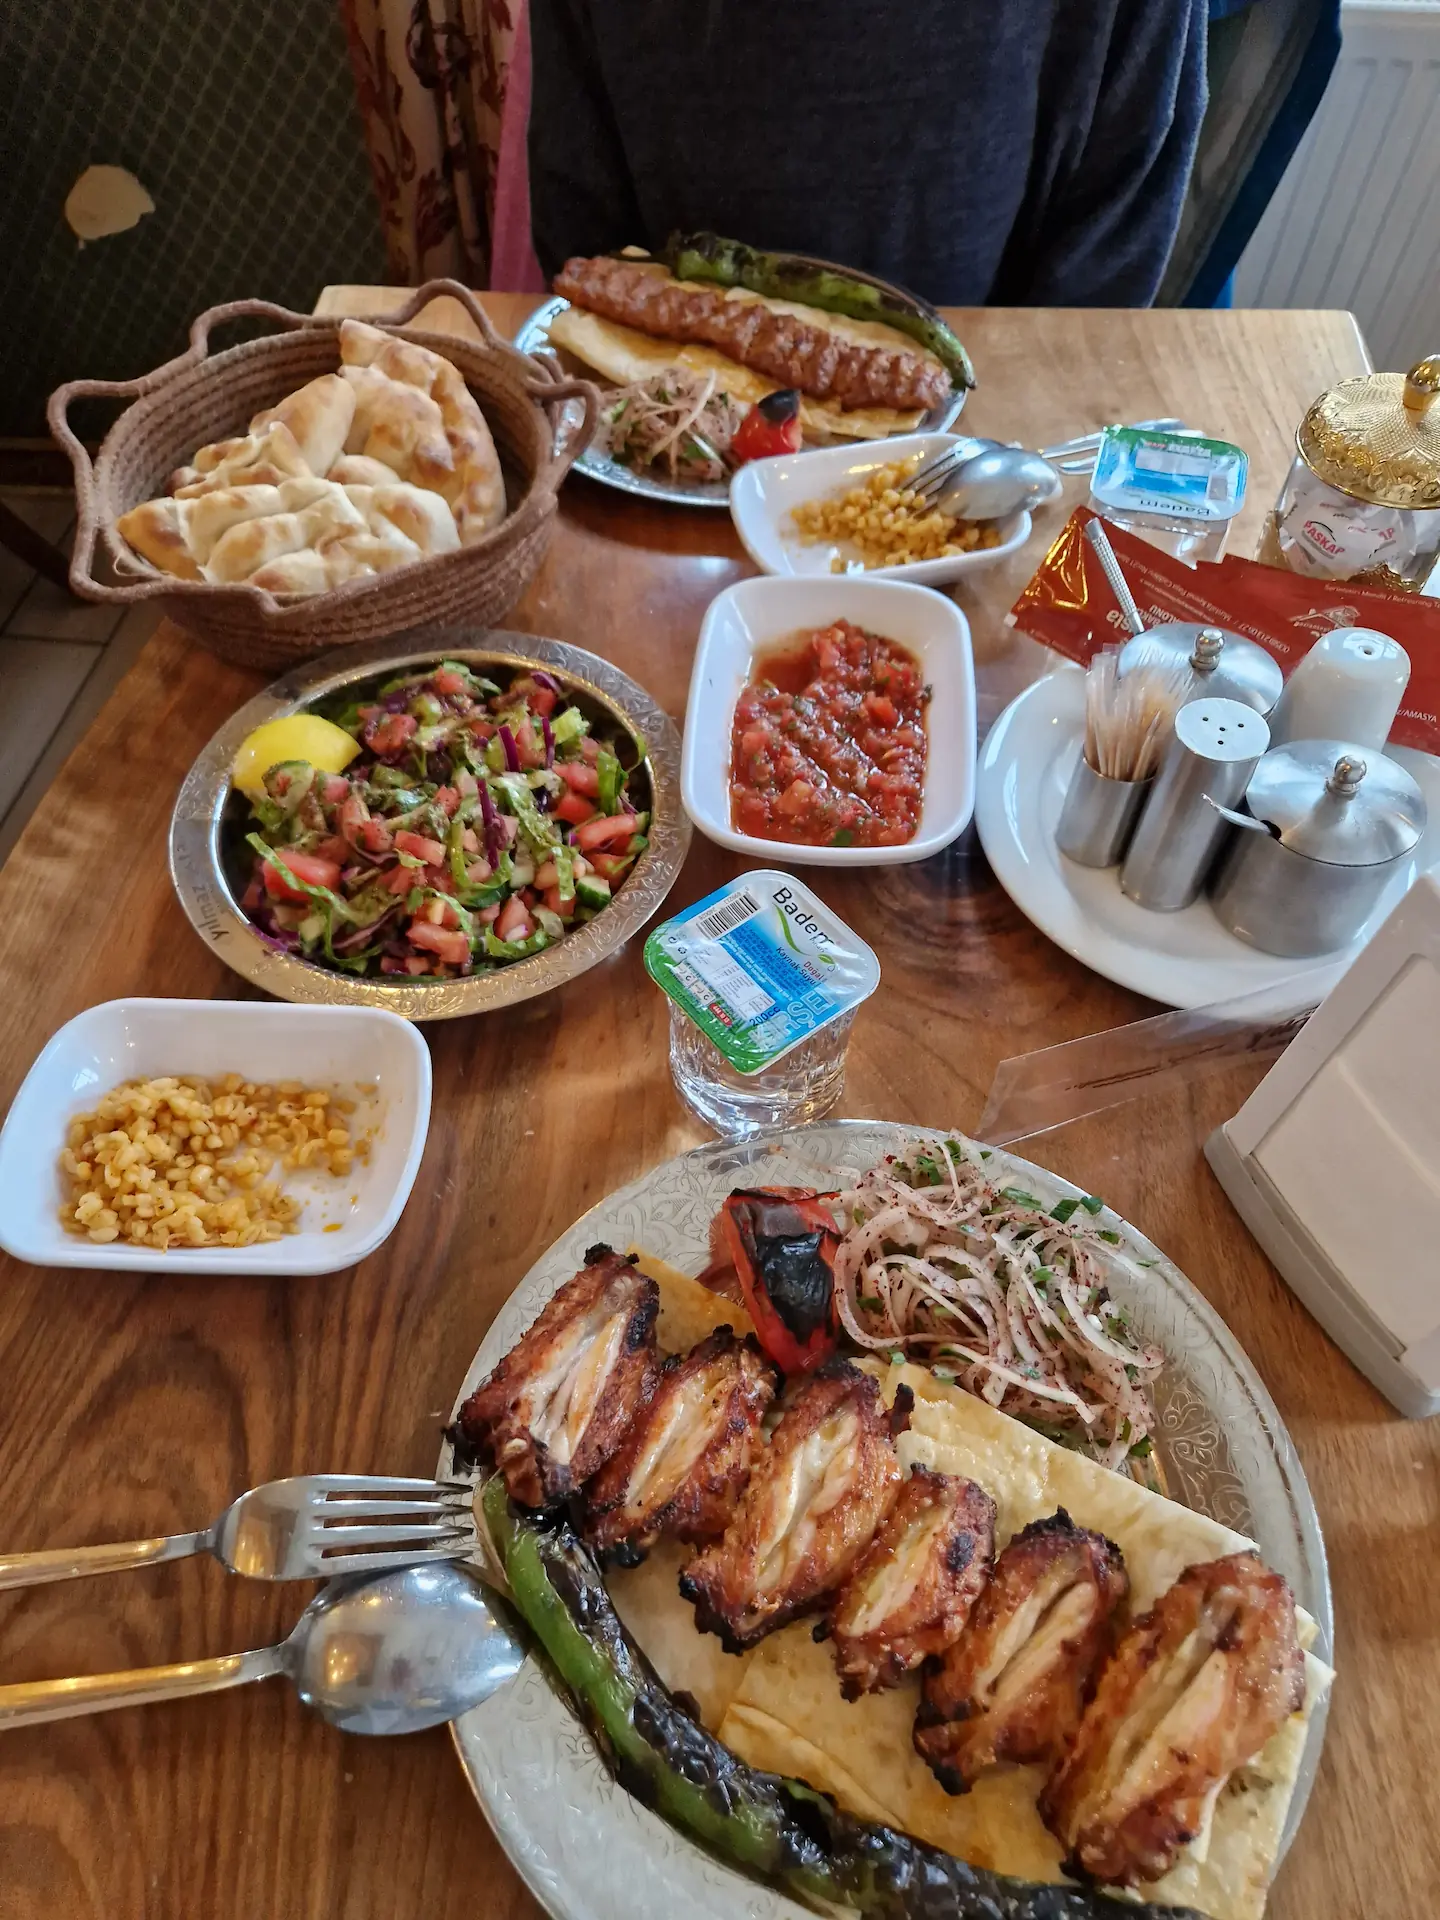 Sur la table : deux assiettes de kebabs et leurs accompagnements (salades, soupes, pains, etc.)